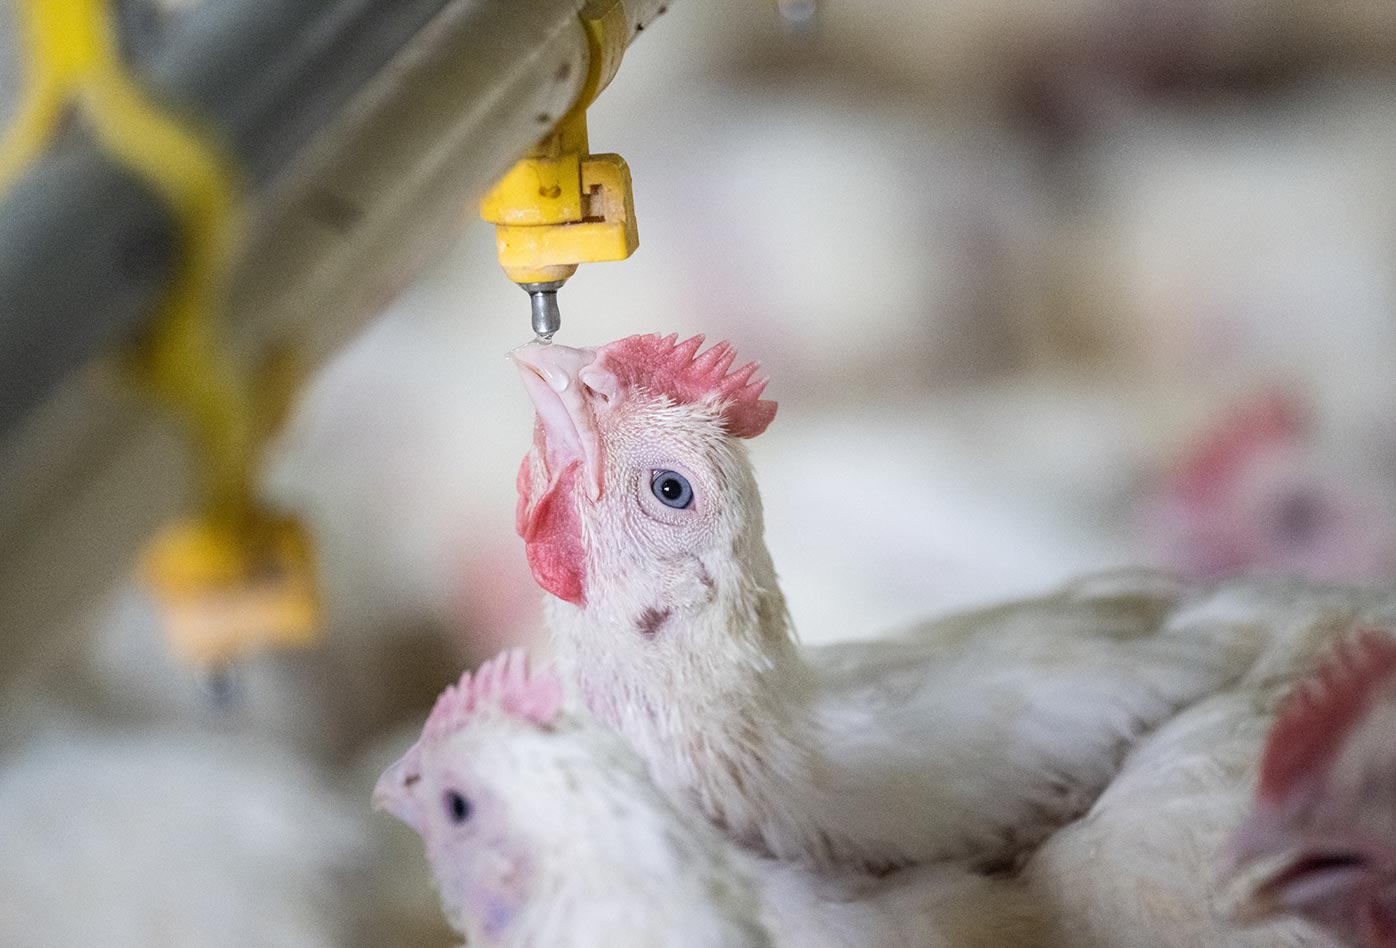 Uno de las 33,000 pollos criados por su carne, bebe de un caño en una hacinado galpón, en una granja industrial de pollos de engorde. Eventualmente vivirán 12,000 pollos en la granja. África Subsahariana, 2002. Jo-Anne McArthur・We Animals Media